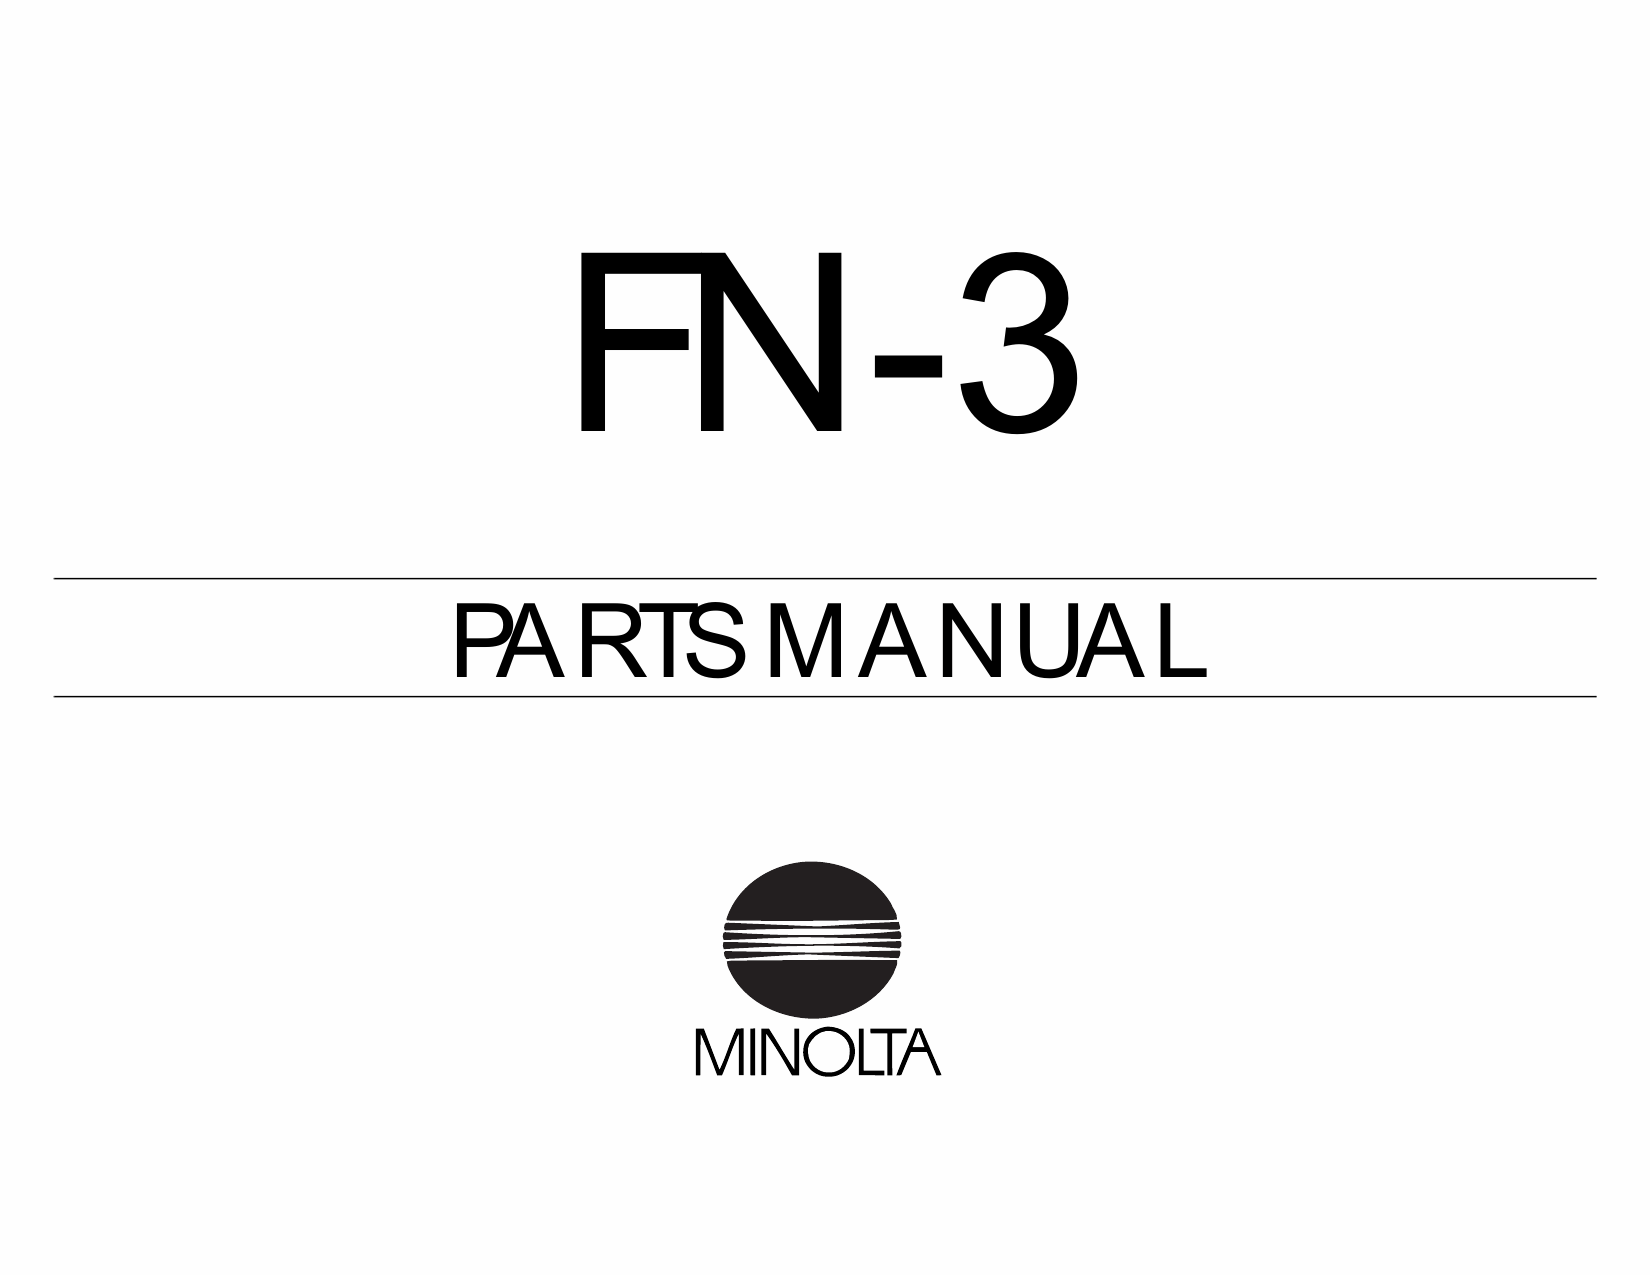 Konica-Minolta Options FN-3 Parts Manual-1